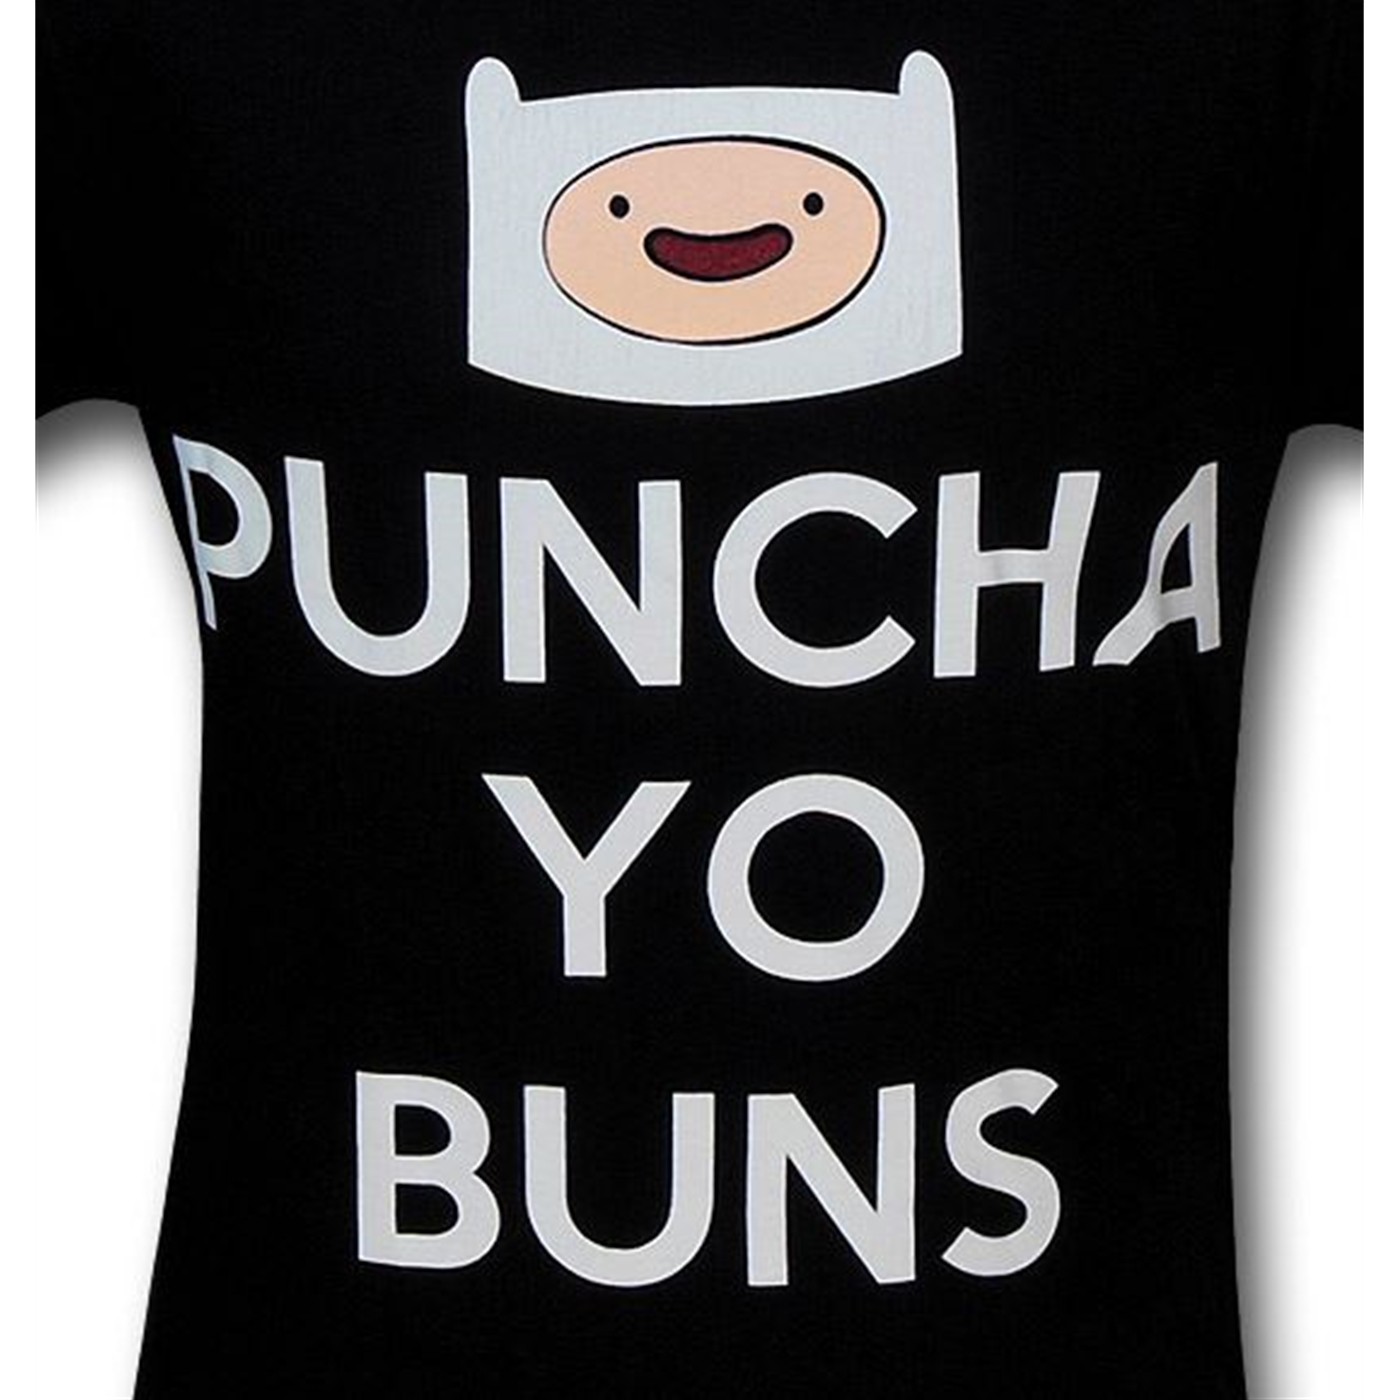 Adventure Time Puncha Yo Buns T-Shirt